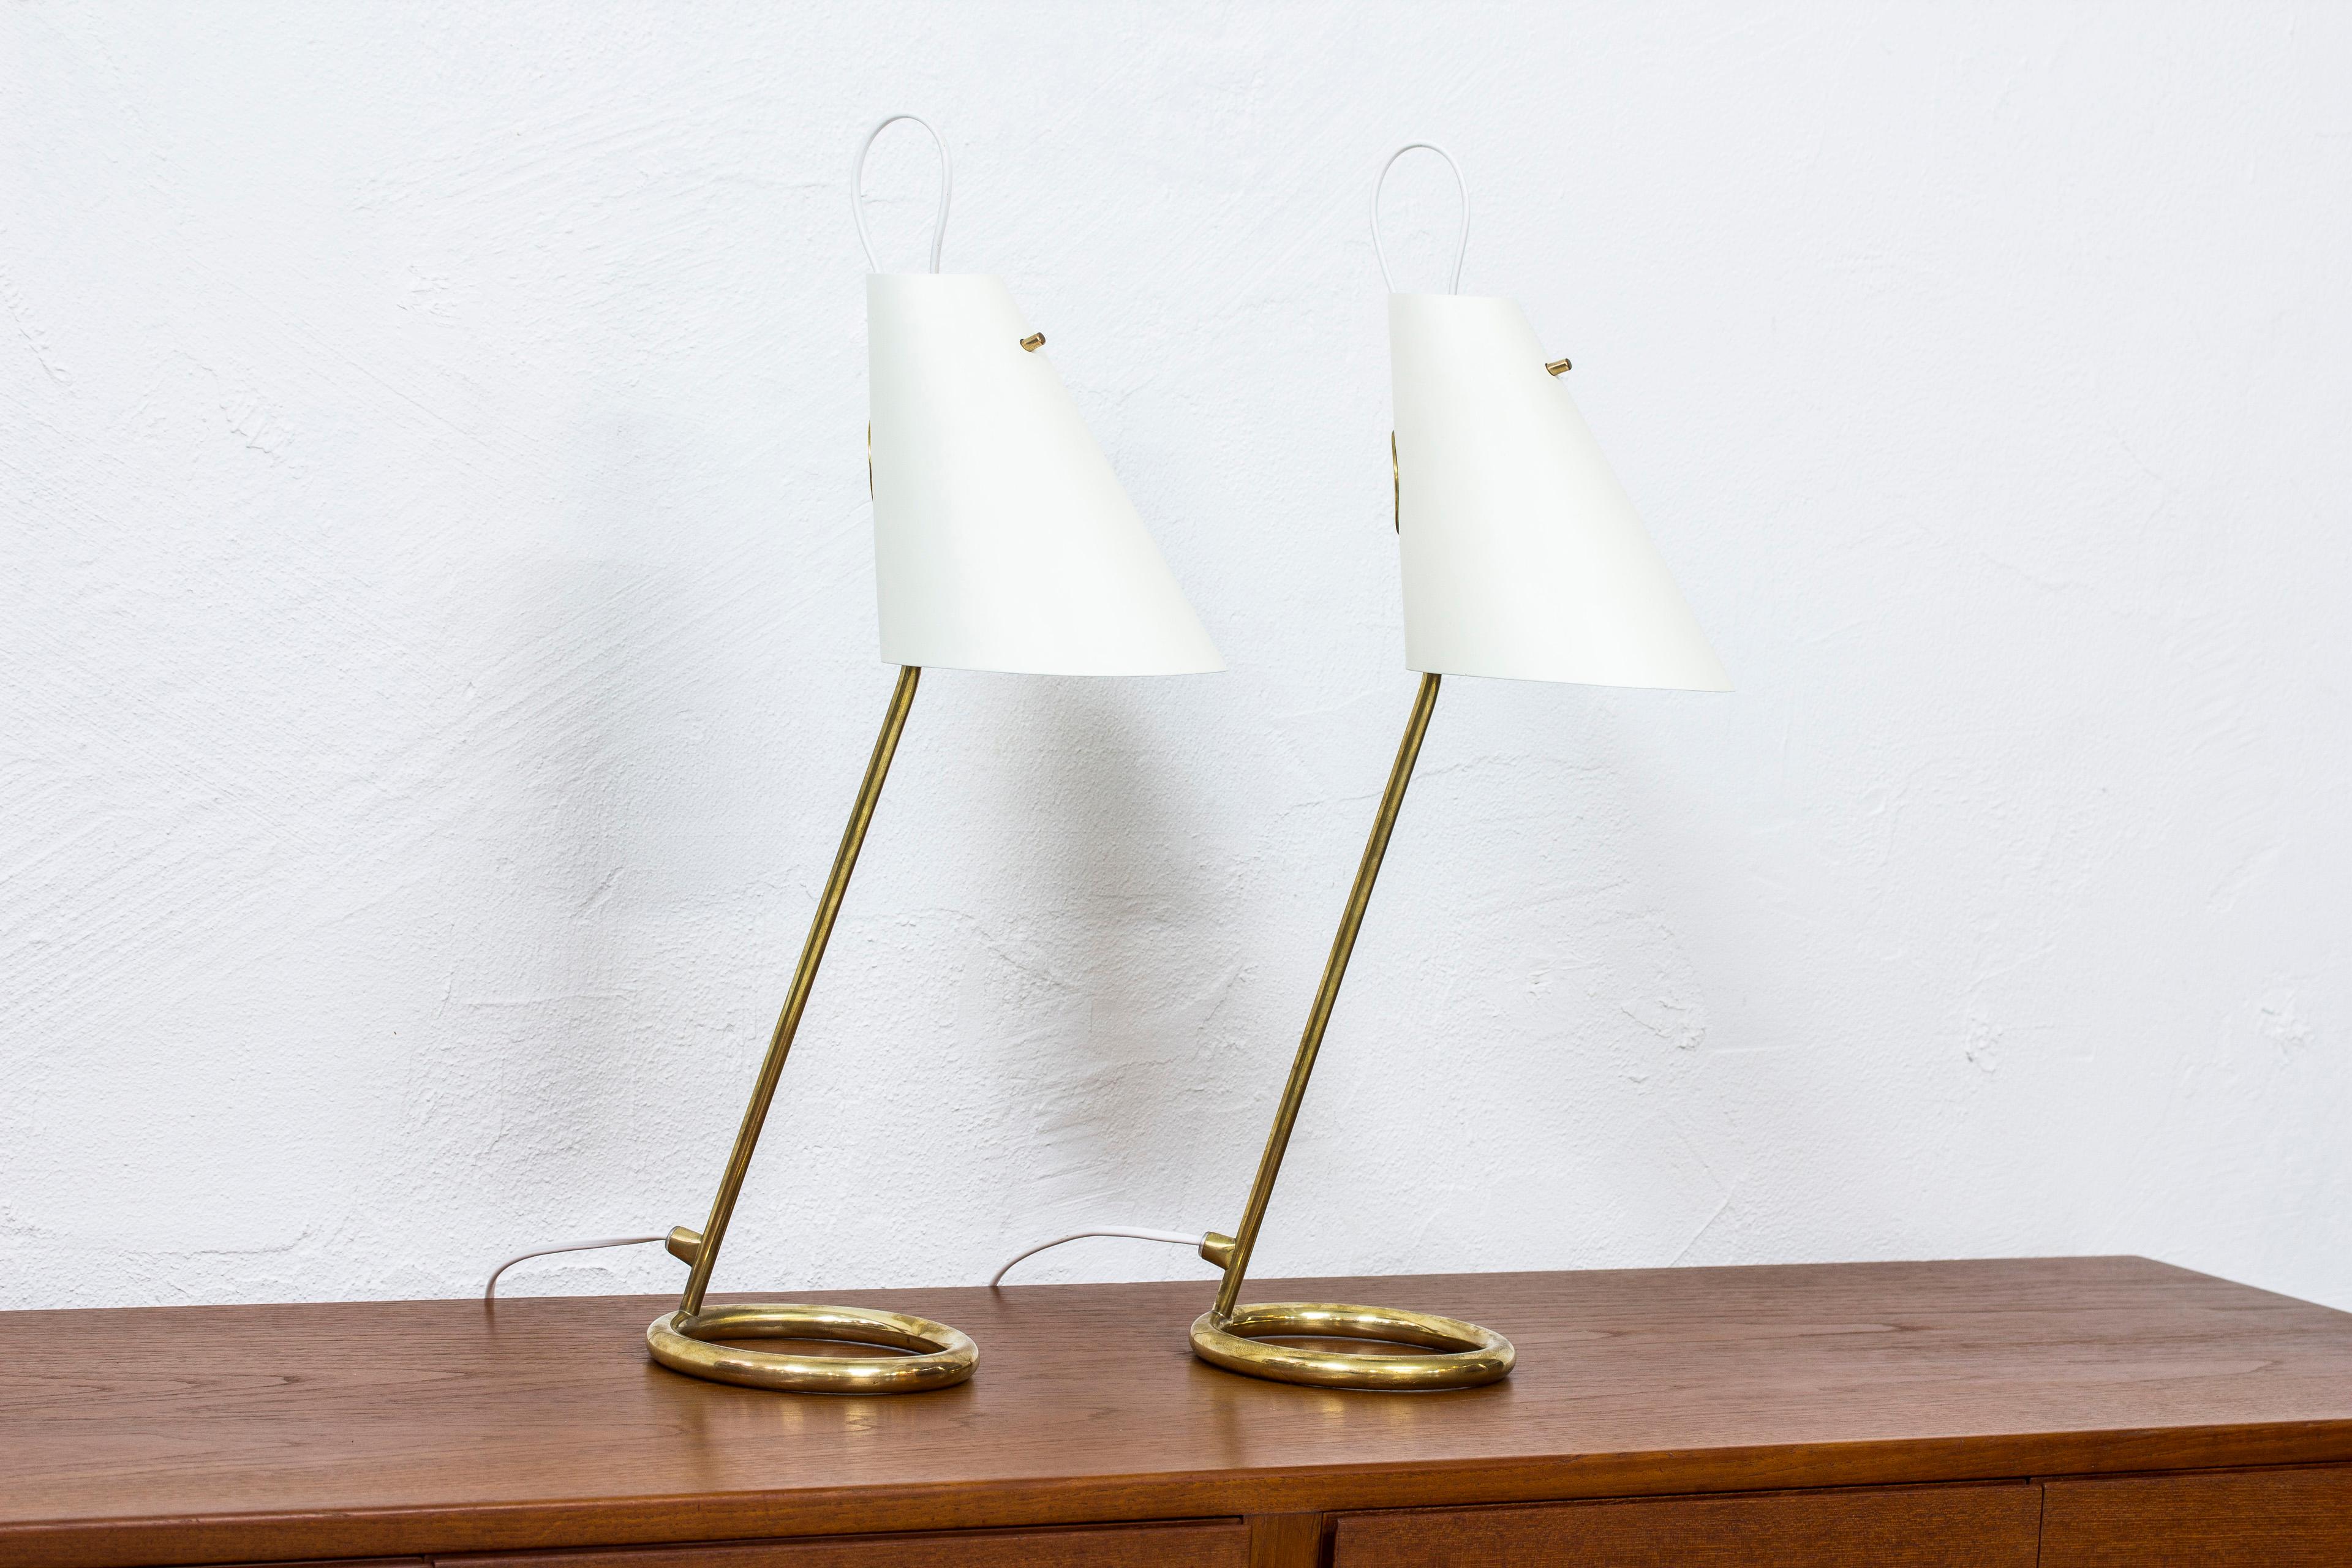 Très rare paire de lampes de table B 90 conçues par Hans-Agne Jakobsson. Produit par sa propre société, vers 1961-1962, en très peu d'exemplaires. Fabriqué en laiton poli avec des abat-jour en aluminium laqué gris clair. Interrupteur d'éclairage